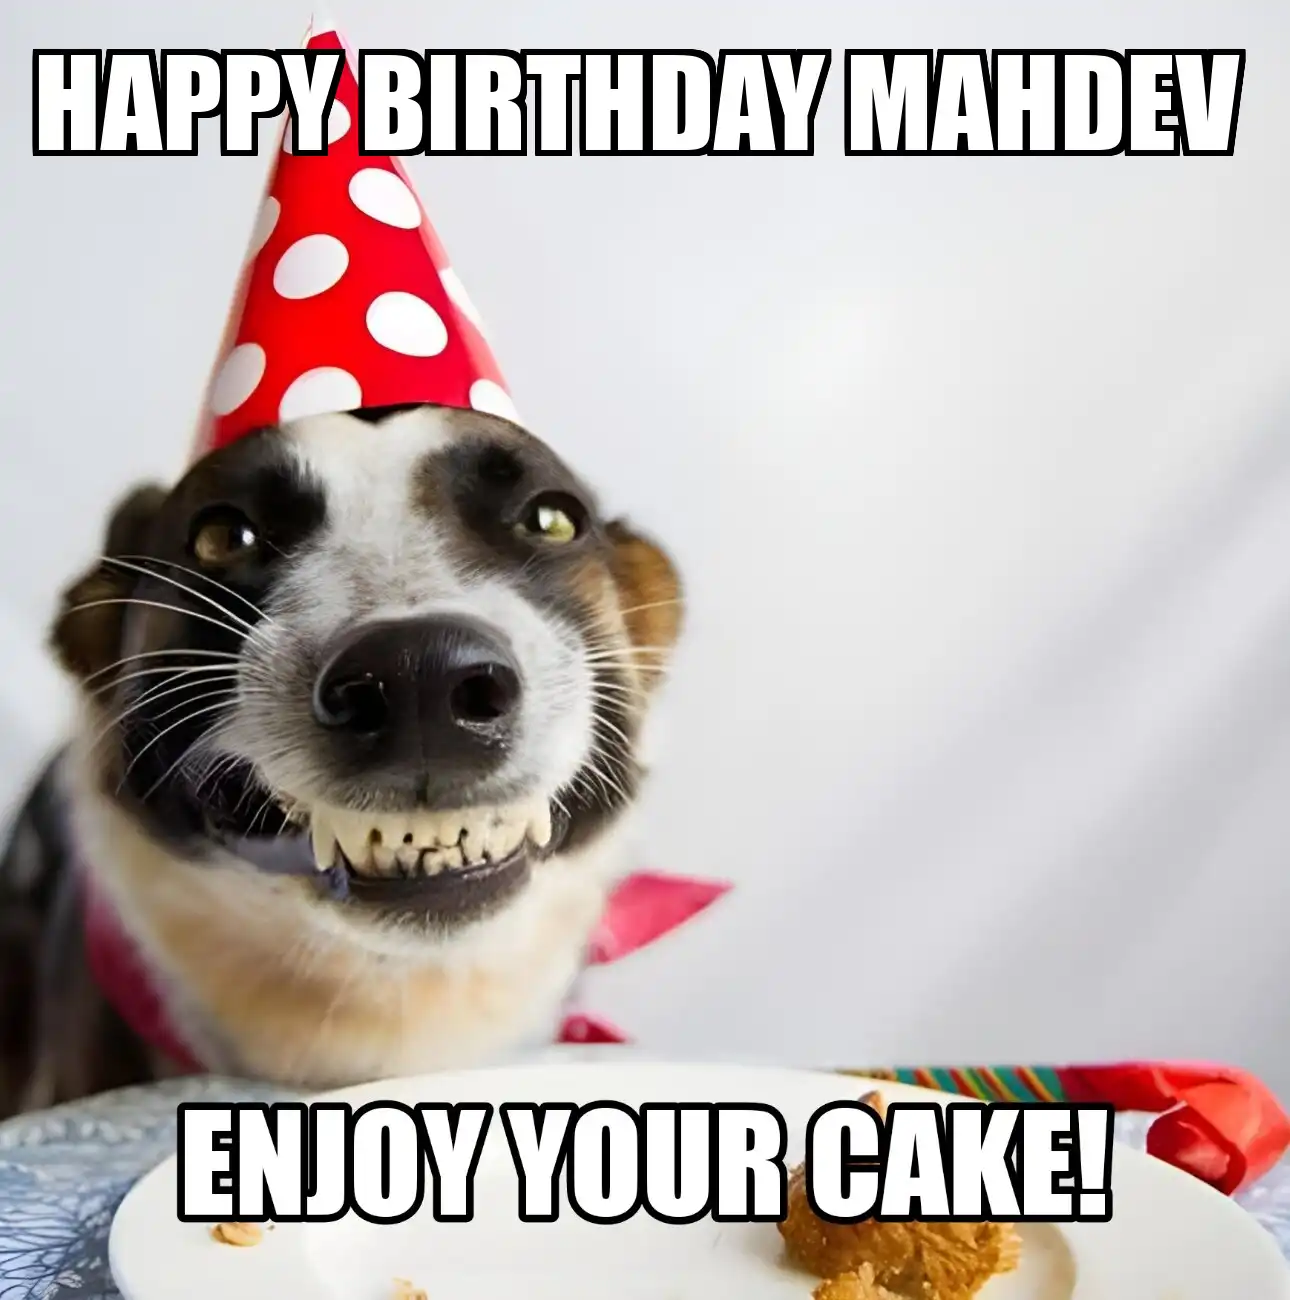 Happy Birthday Mahdev Enjoy Your Cake Dog Meme